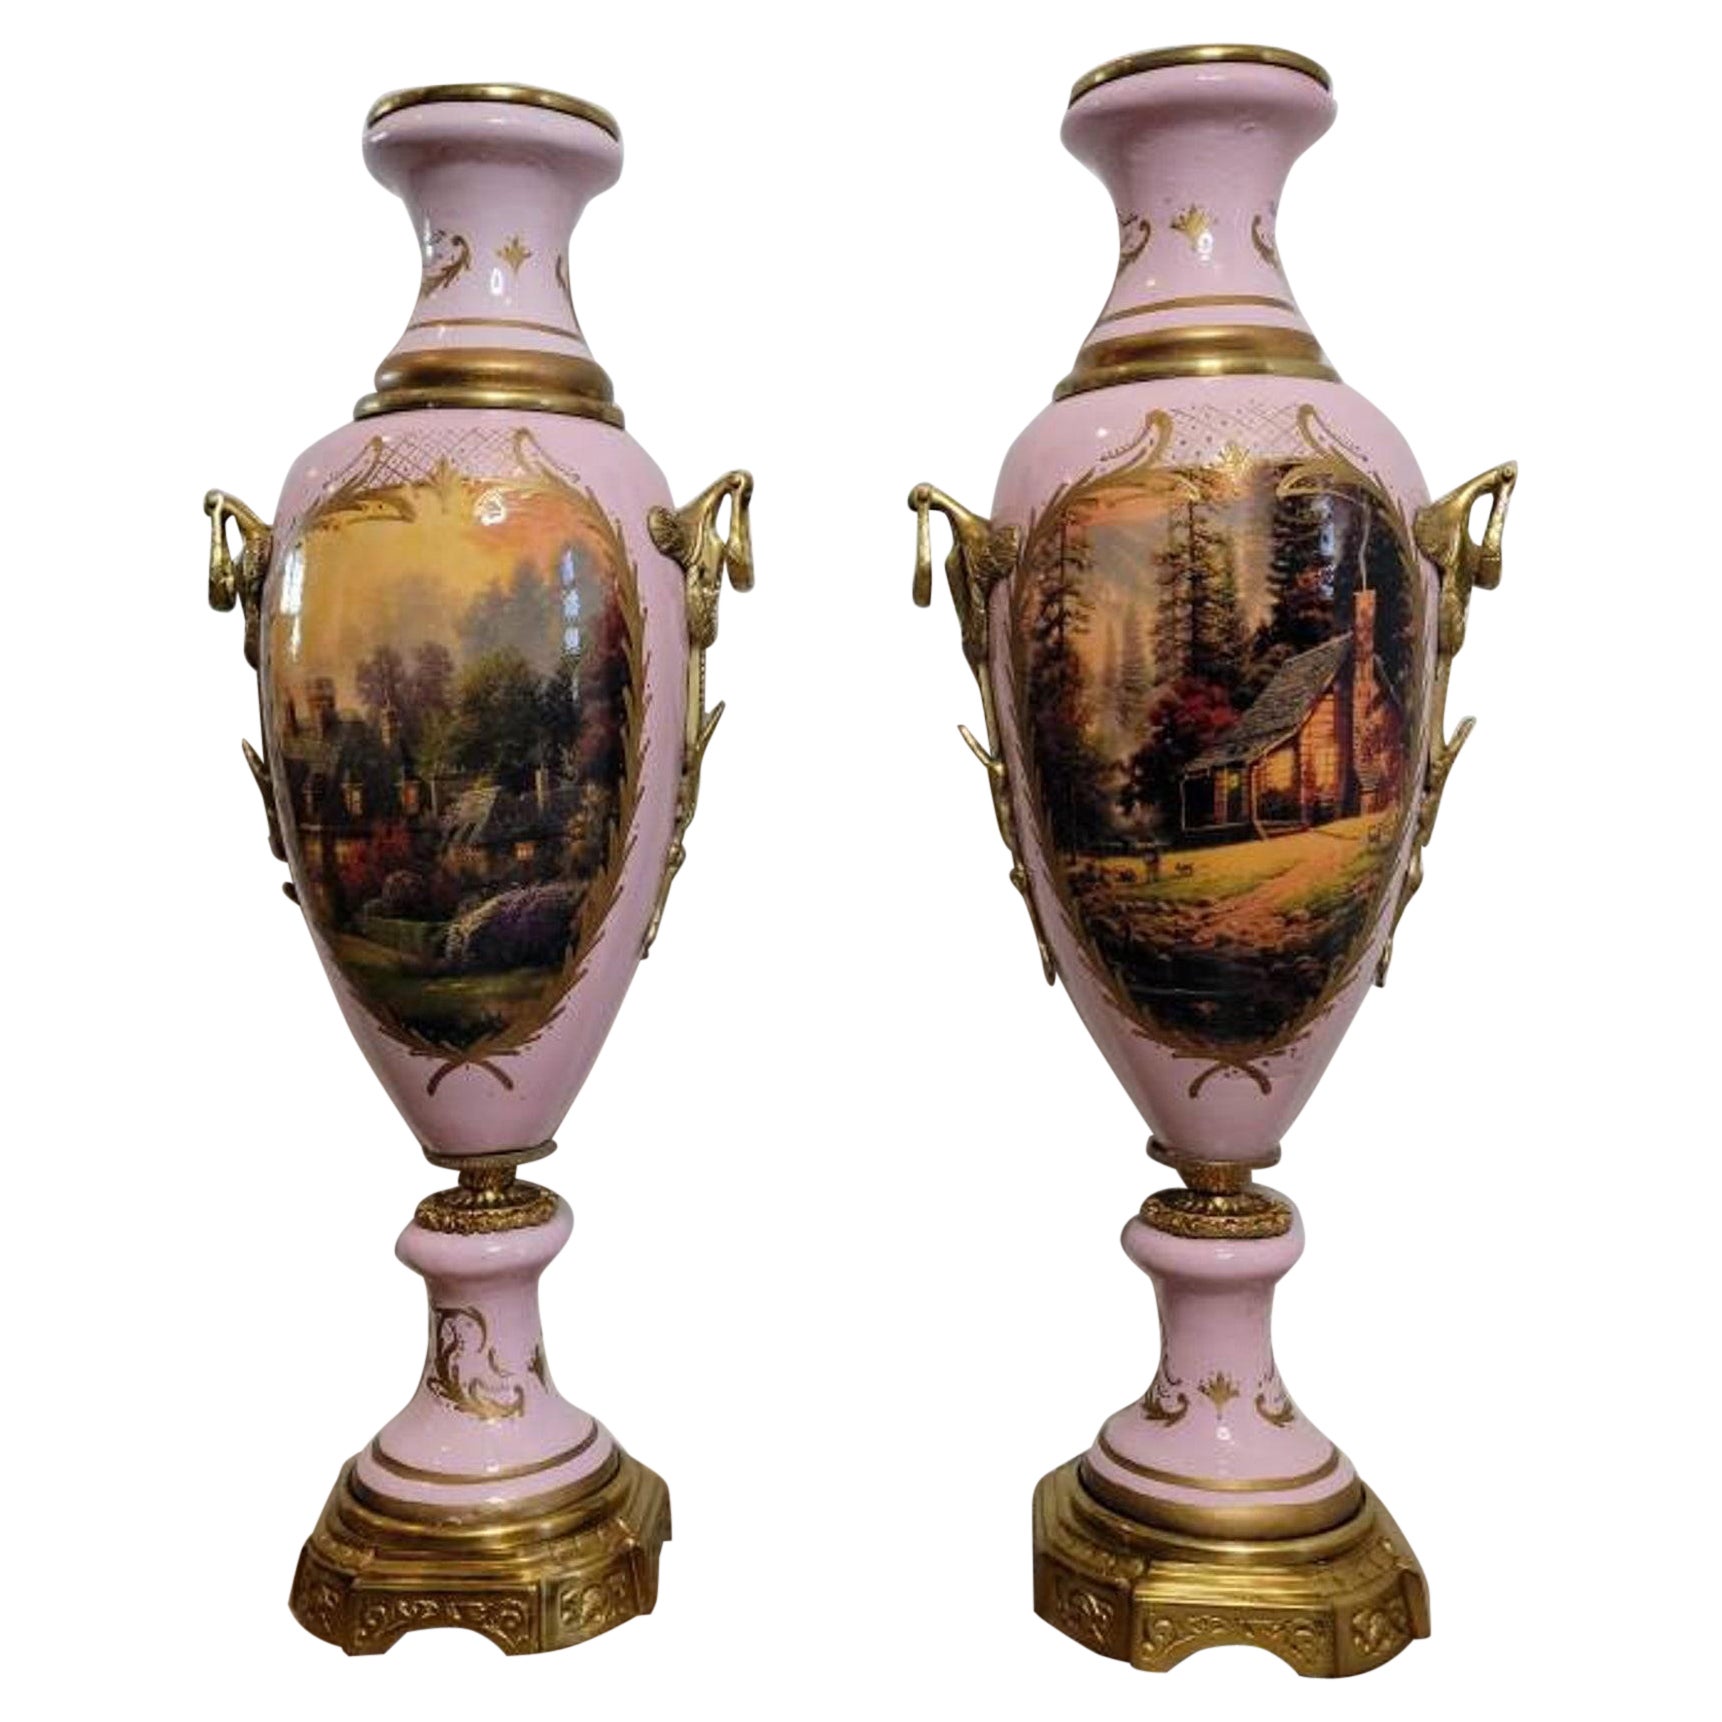 Paire d'urnes monumentales en porcelaine de style Empire français Svres du 19ème siècle